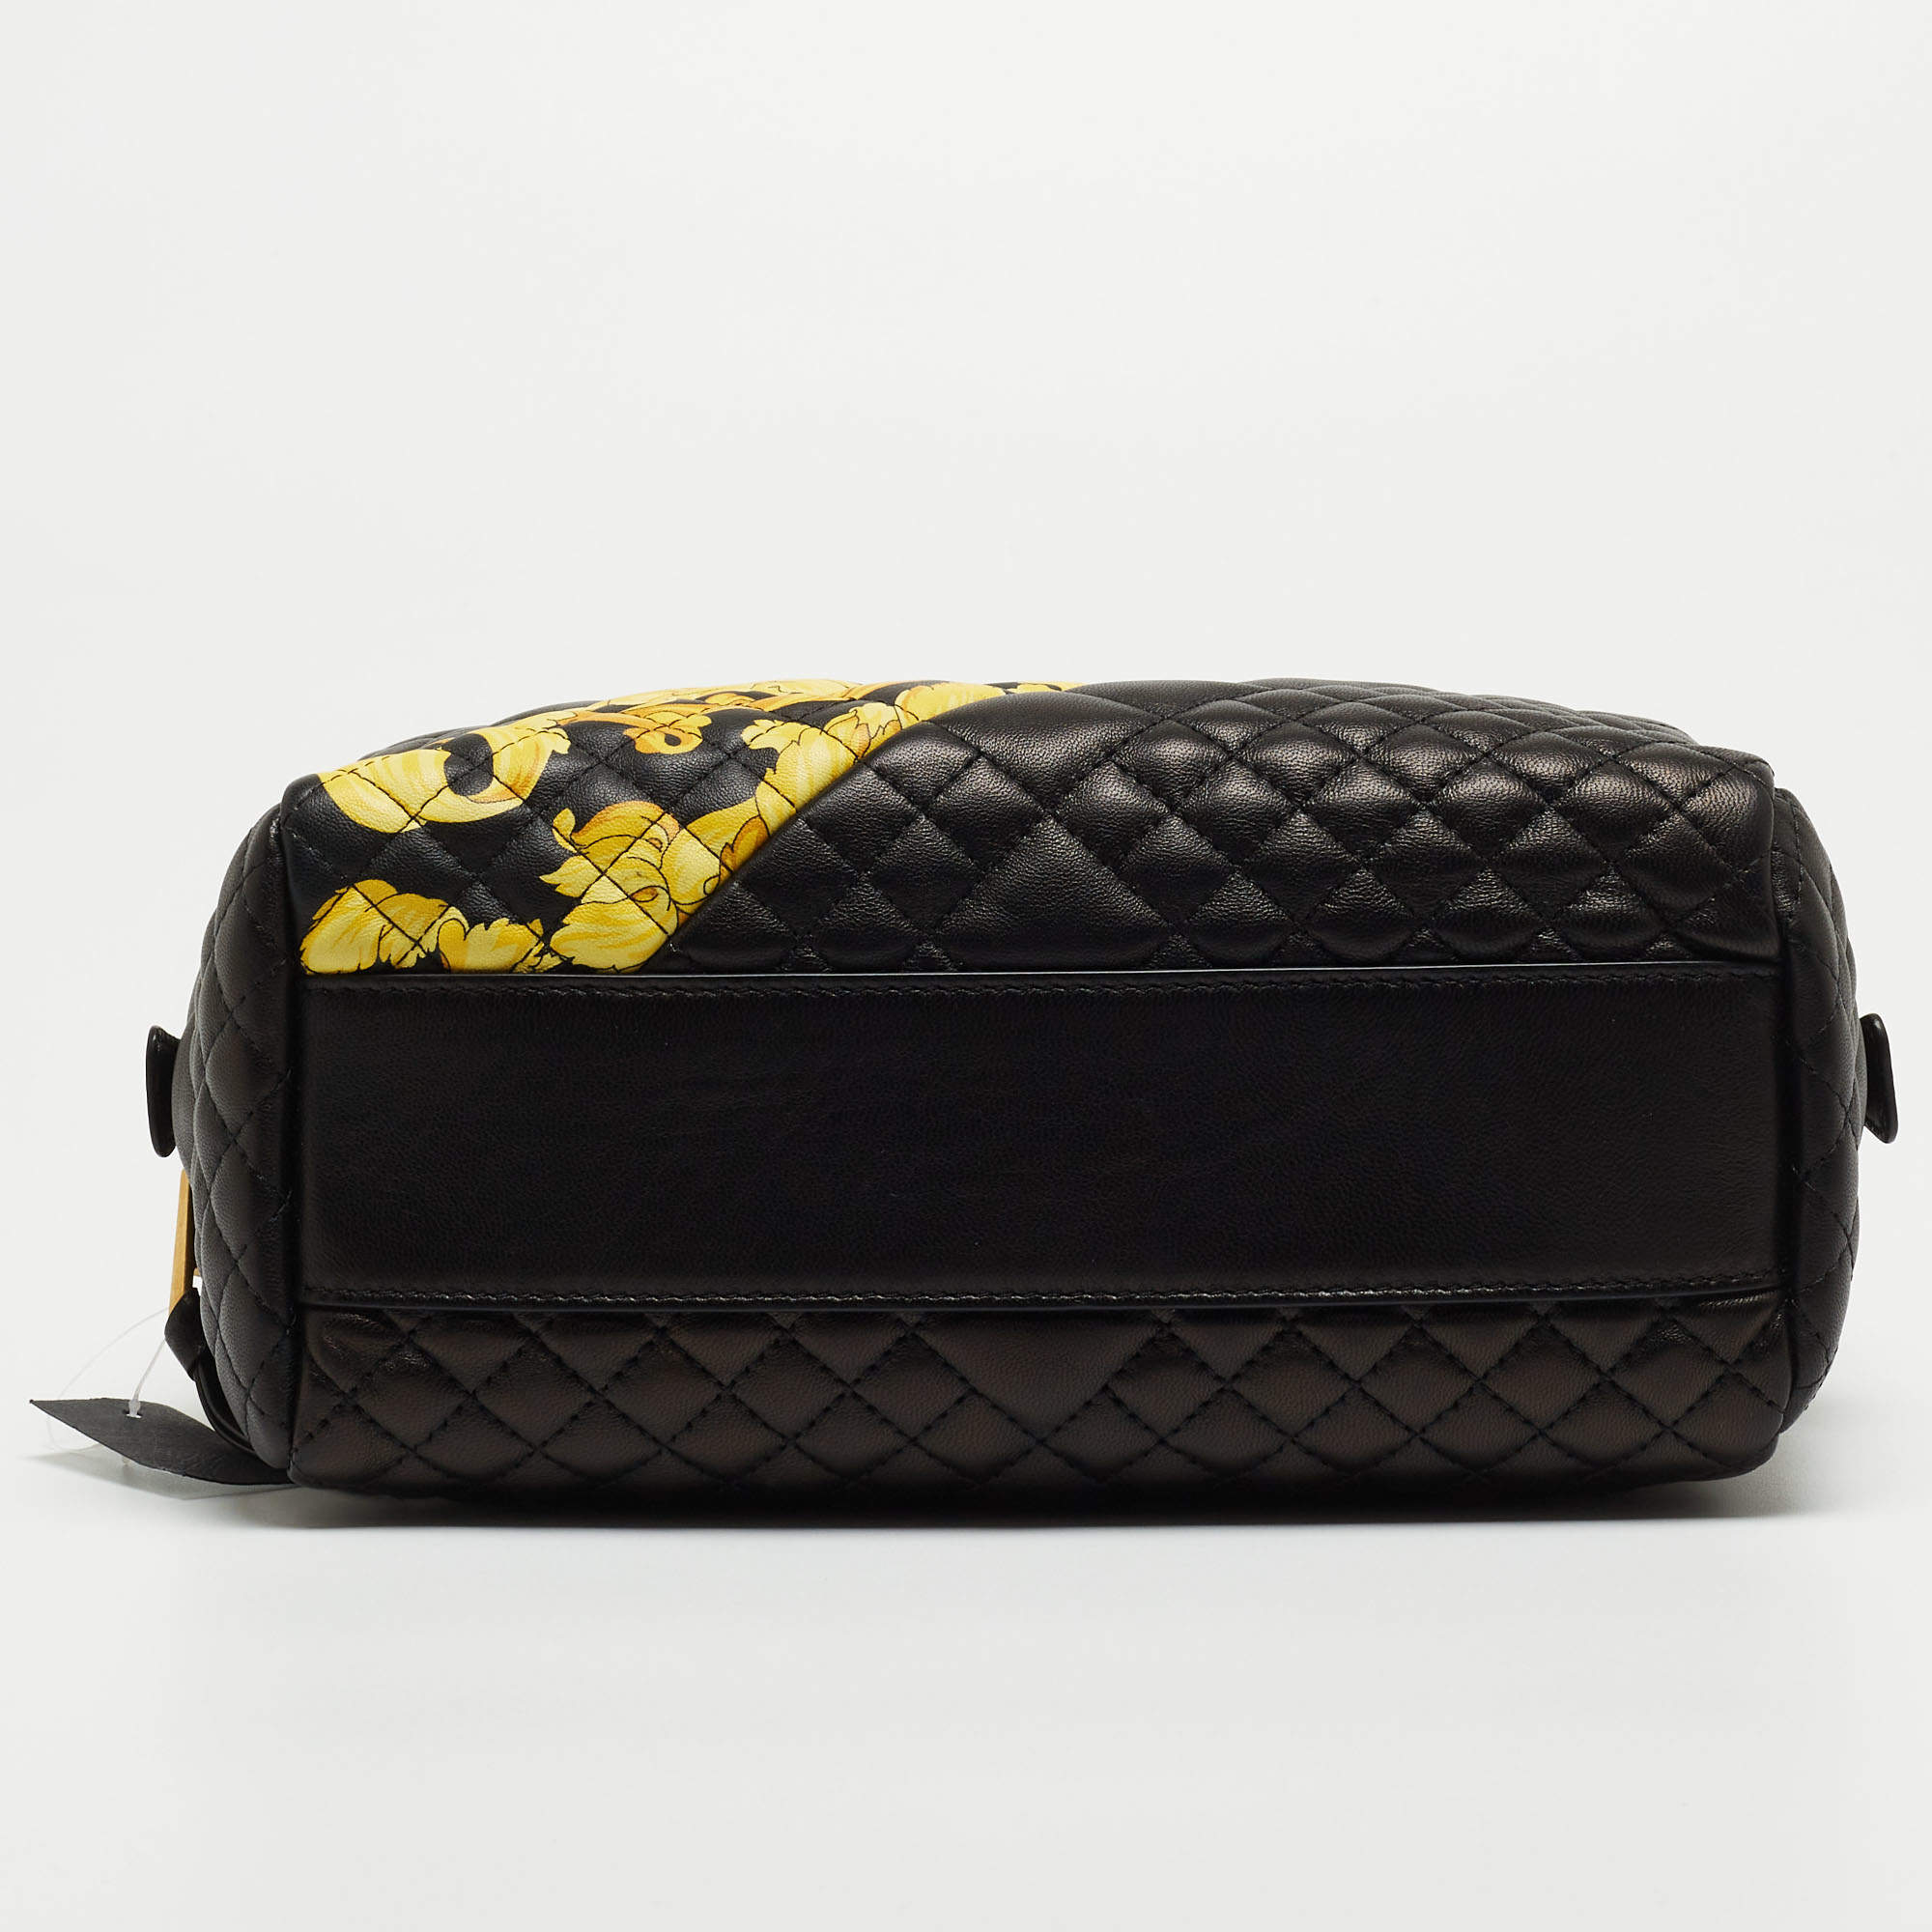 Versace Barocco Icon Shoulder Bag